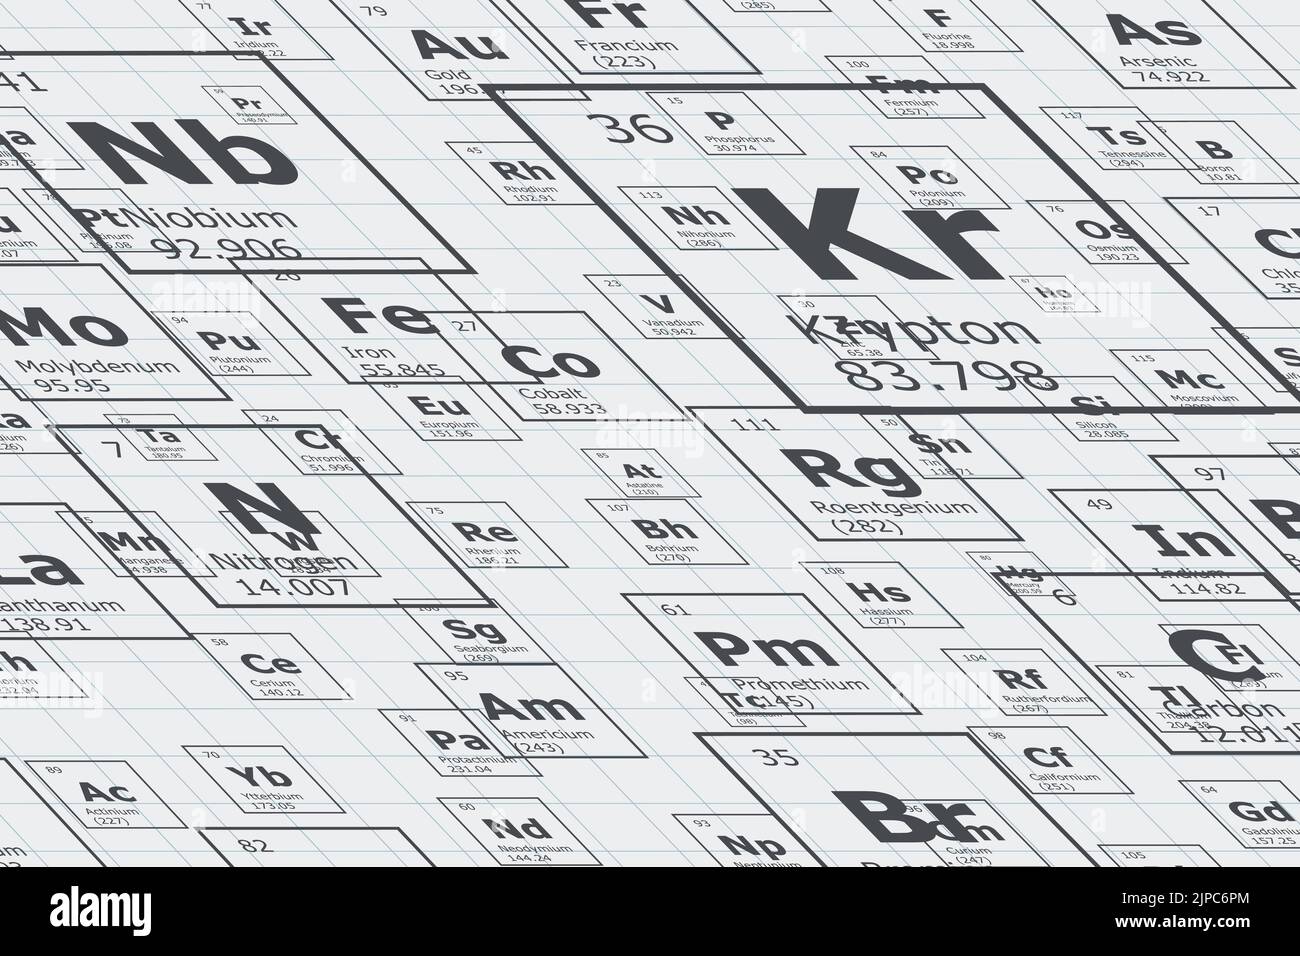 Hintergrund in Perspektive der chemischen Elemente des Periodensystems, Ordnungszahl, Atomgewicht, Name und Symbol des Elements auf einem Gitterblatt Stock Vektor